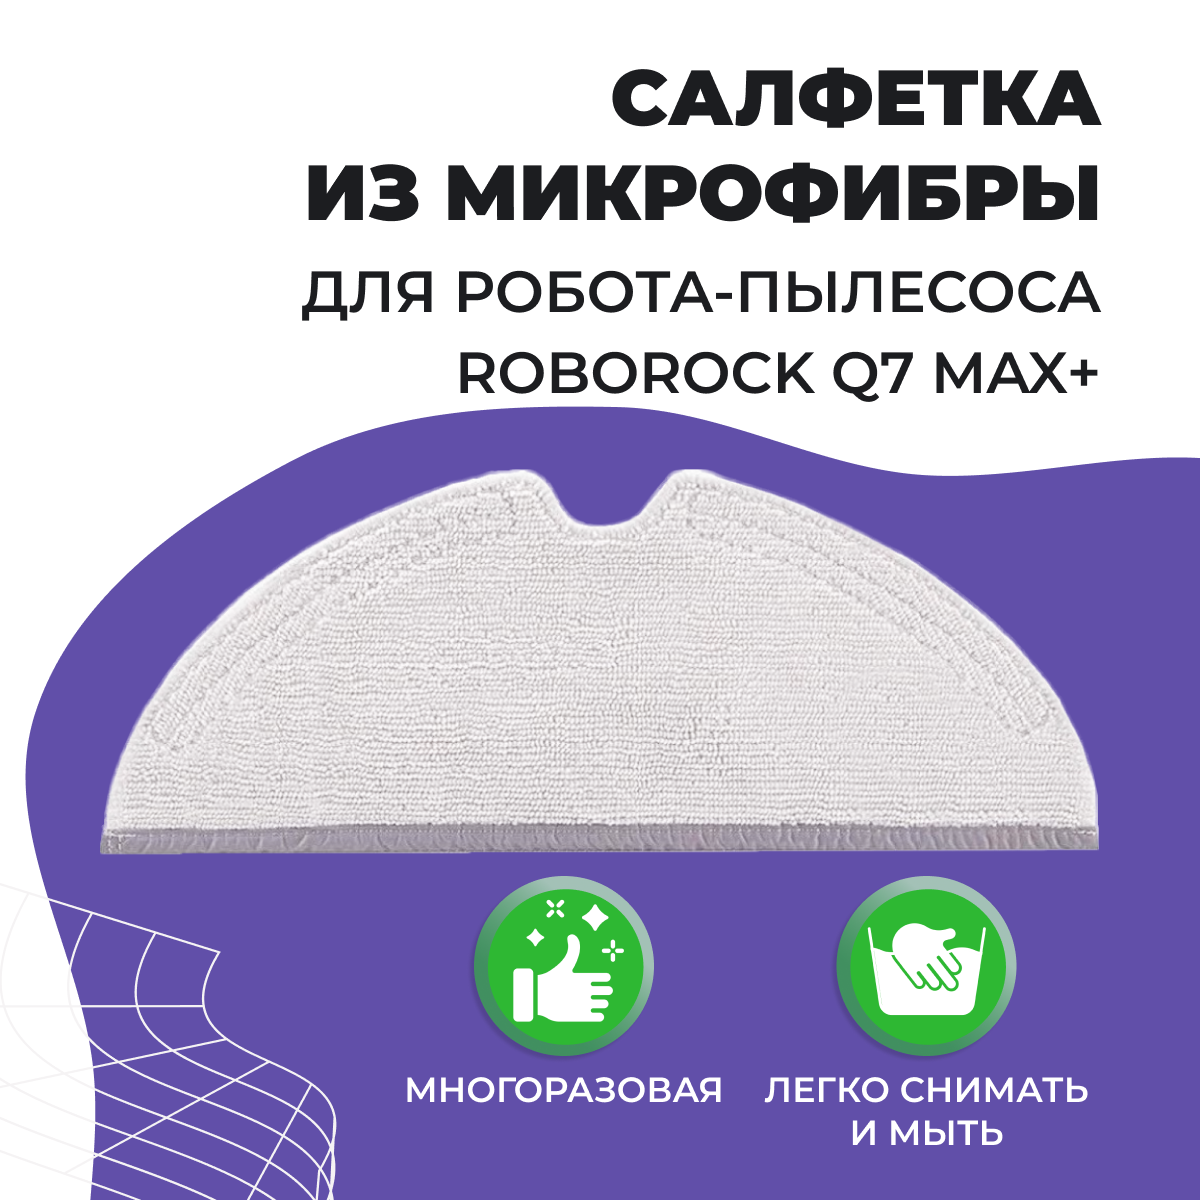 Тряпка для робота-пылесоса Roborock Q7 Max+ 558082, фото 1